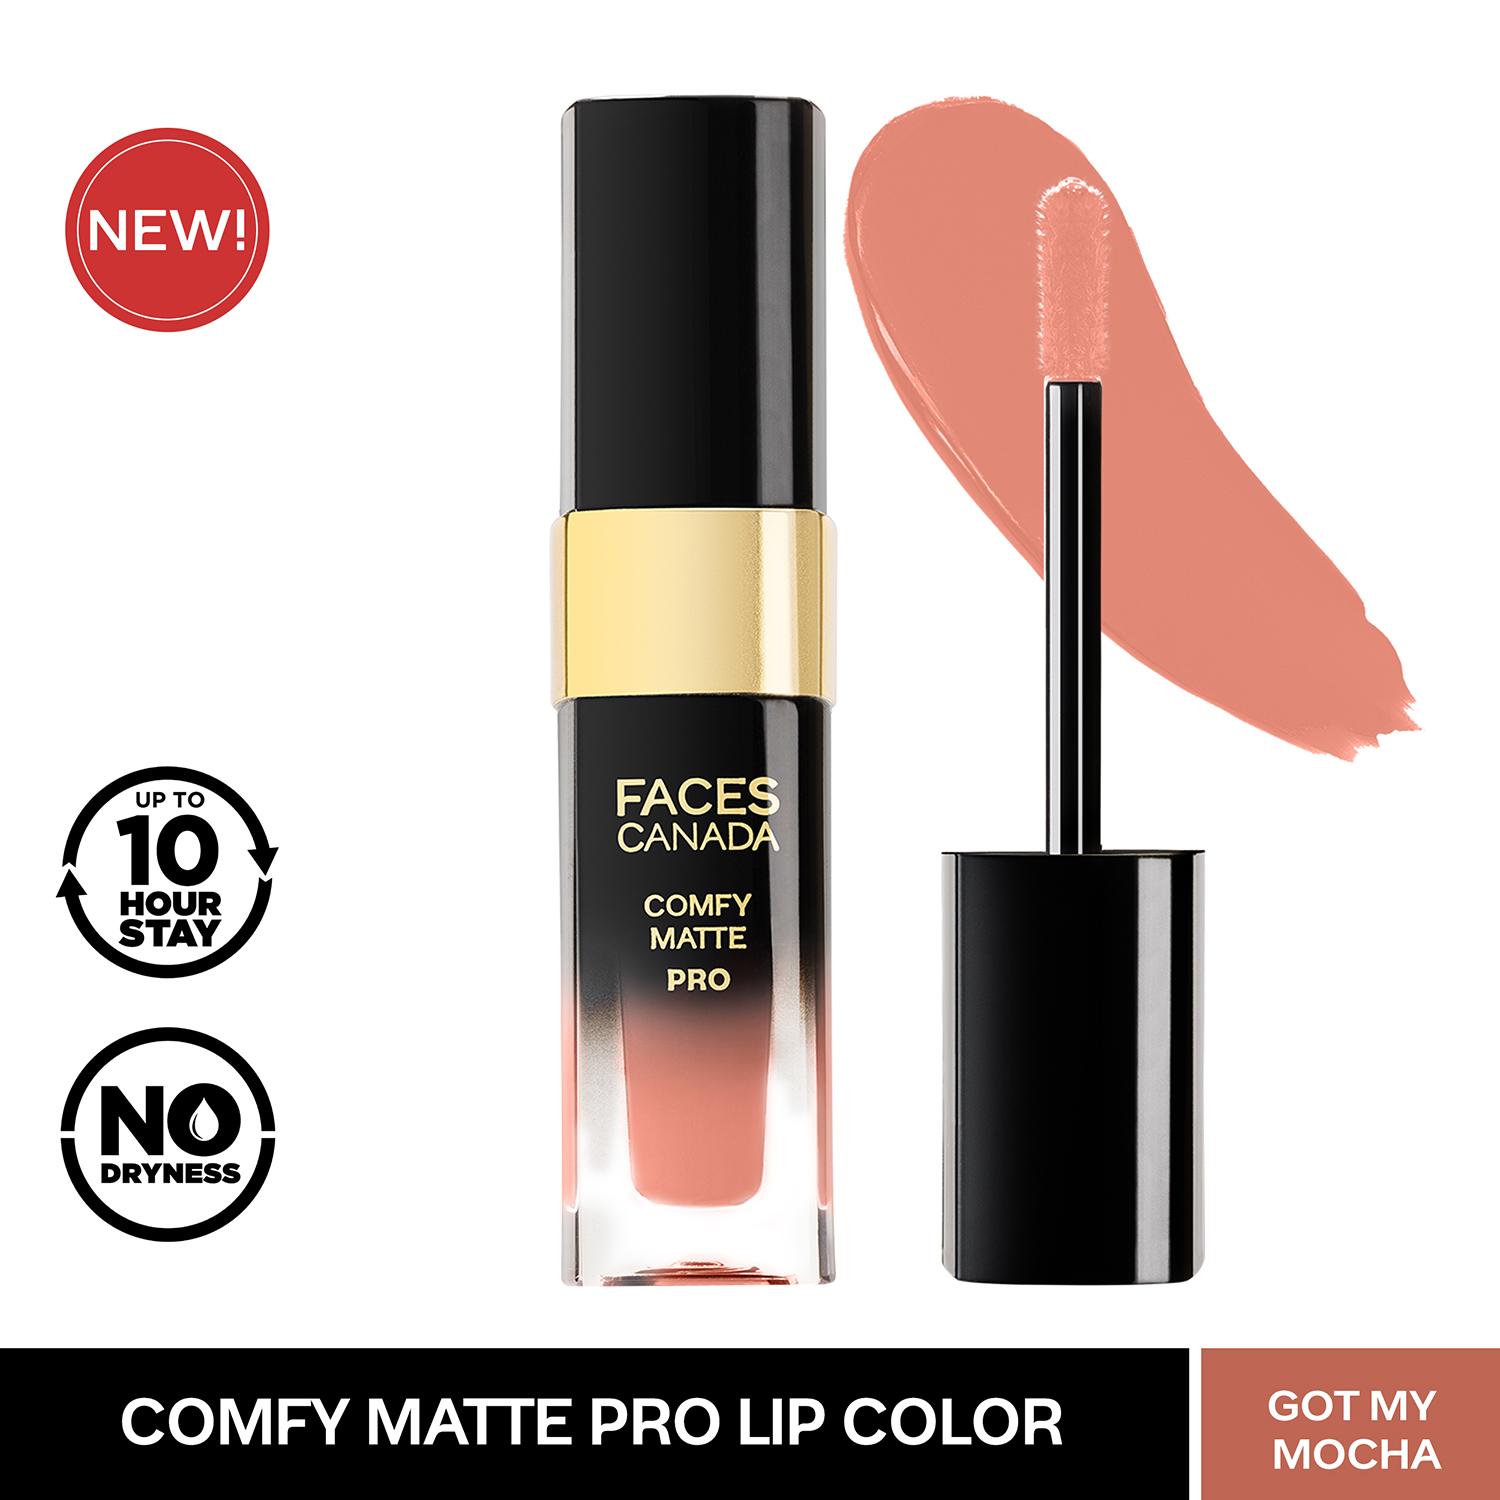 Faces Canada | Faces Canada Comfy Matte Pro Liquid Lipstick - 17 Got My Mocha (5.5ml)